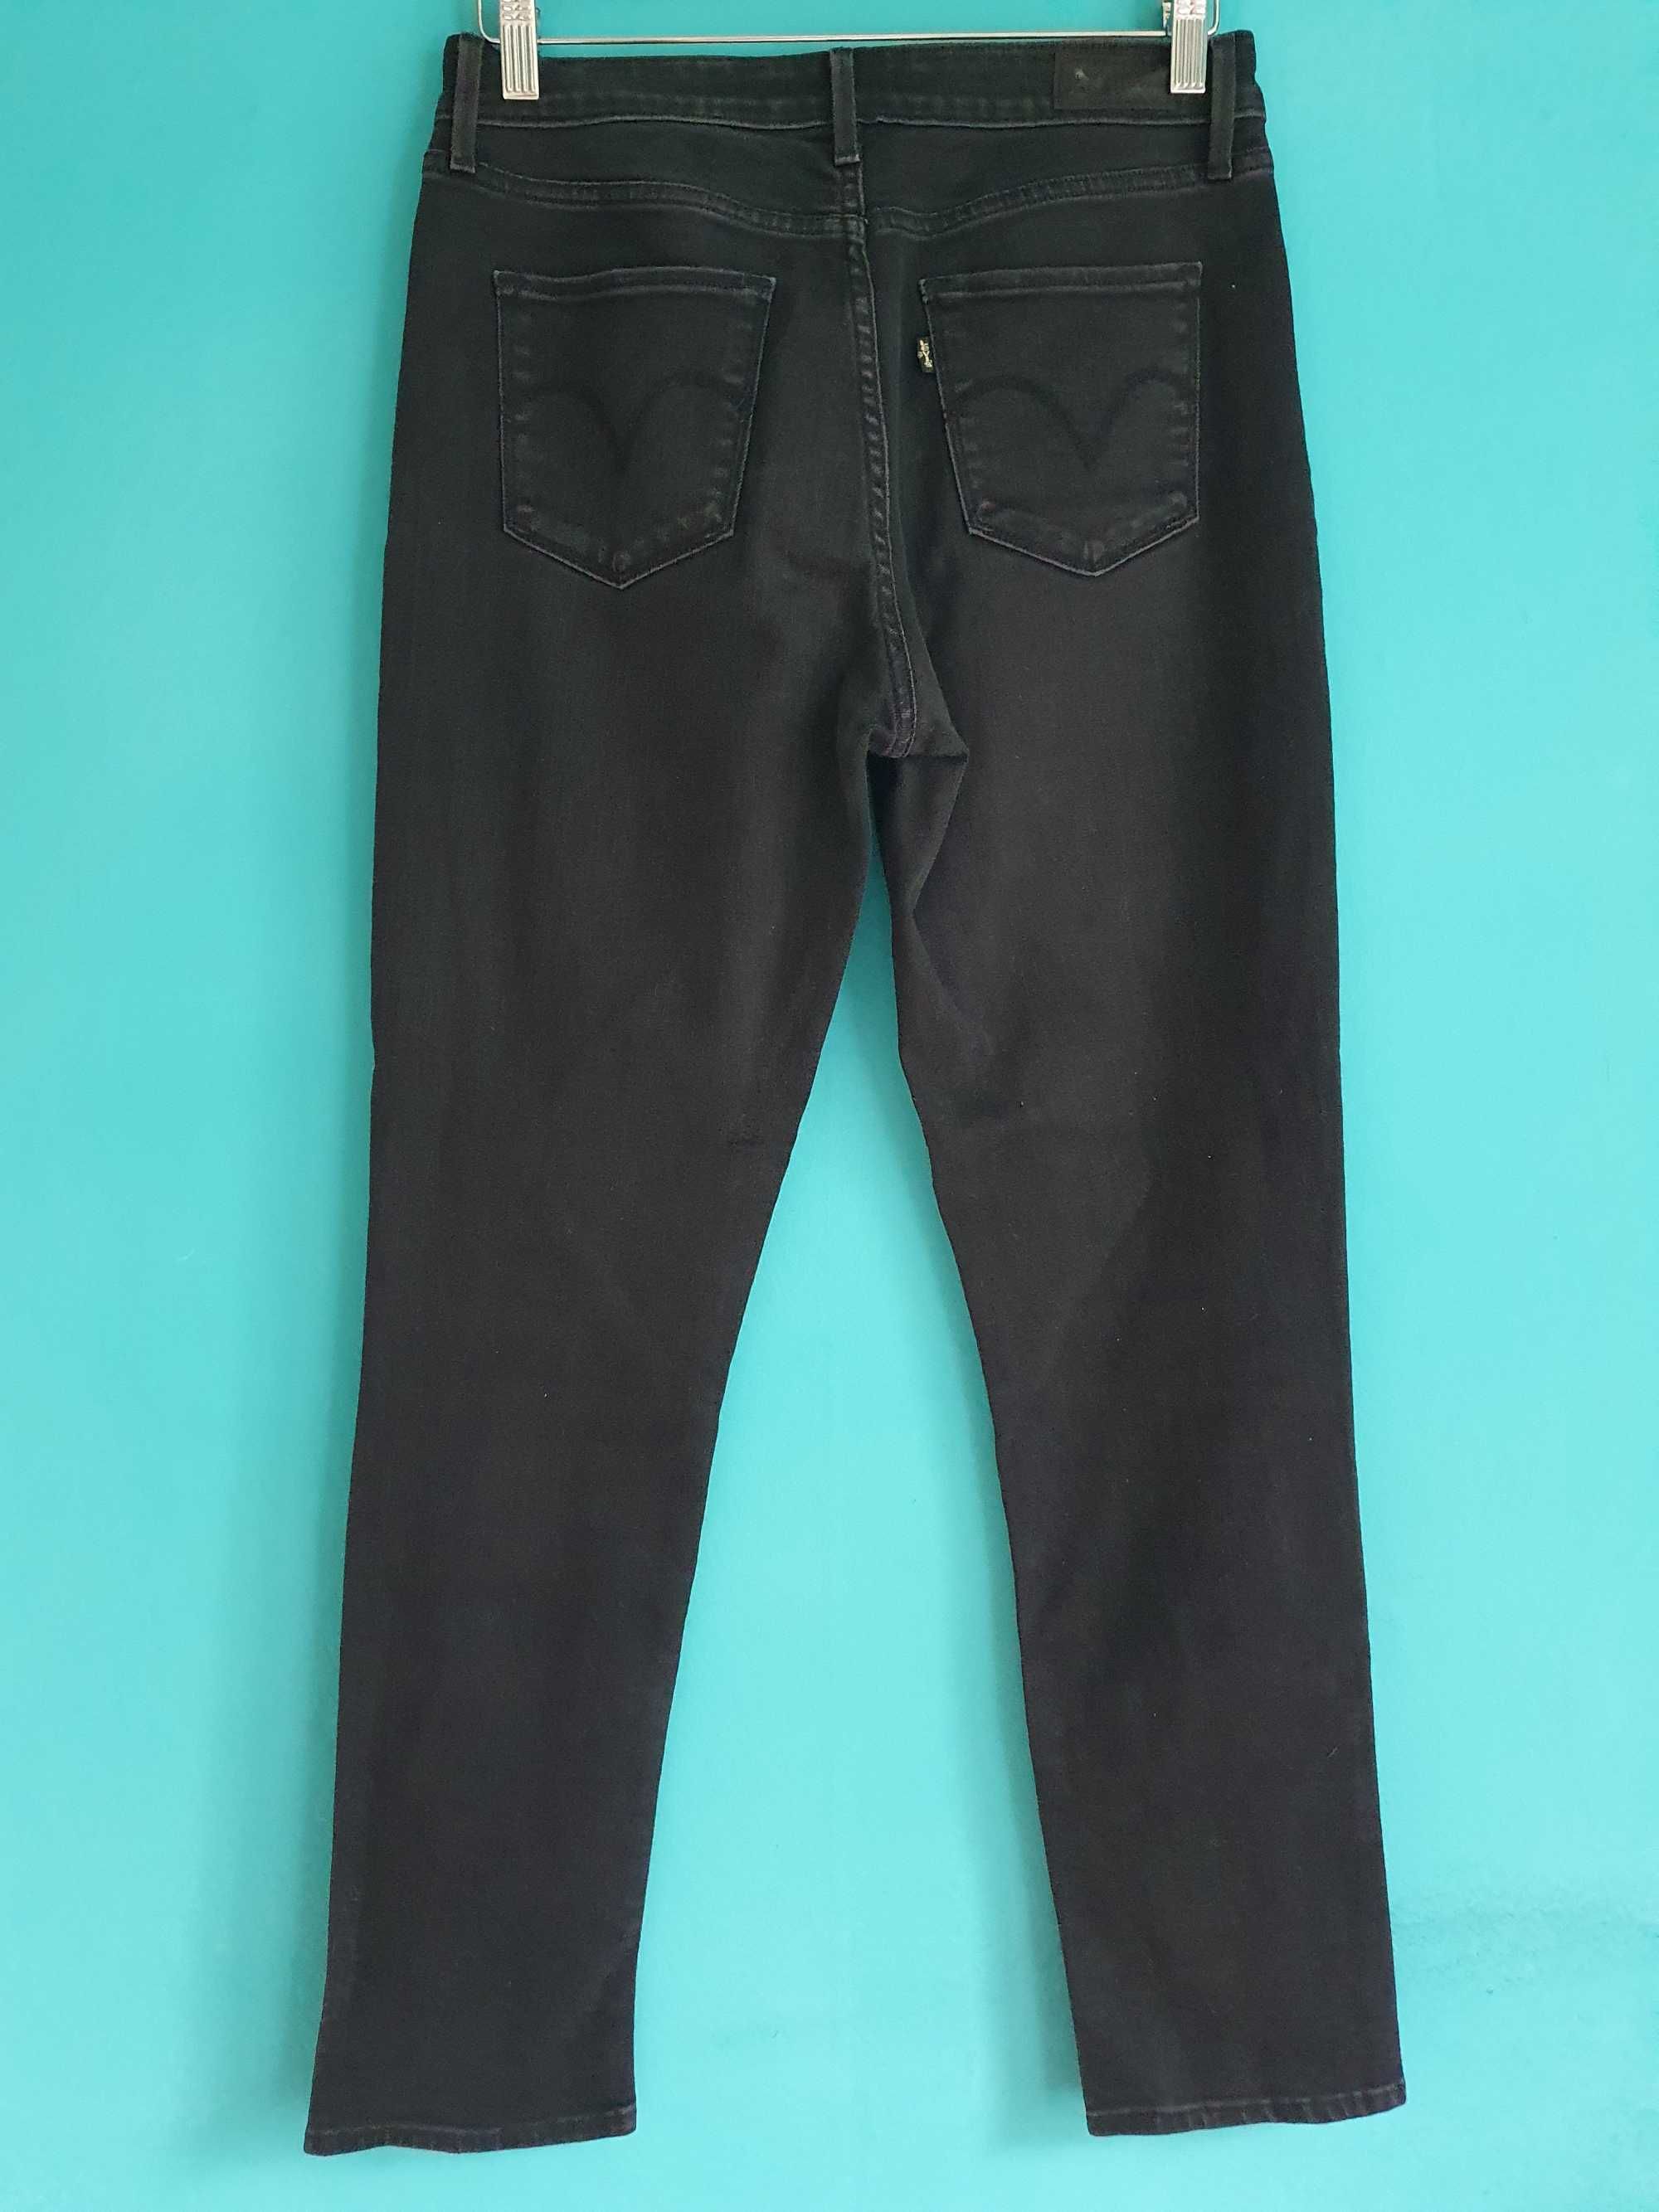 Бял панталон Polo Ralph Lauren и черни дънки Levis